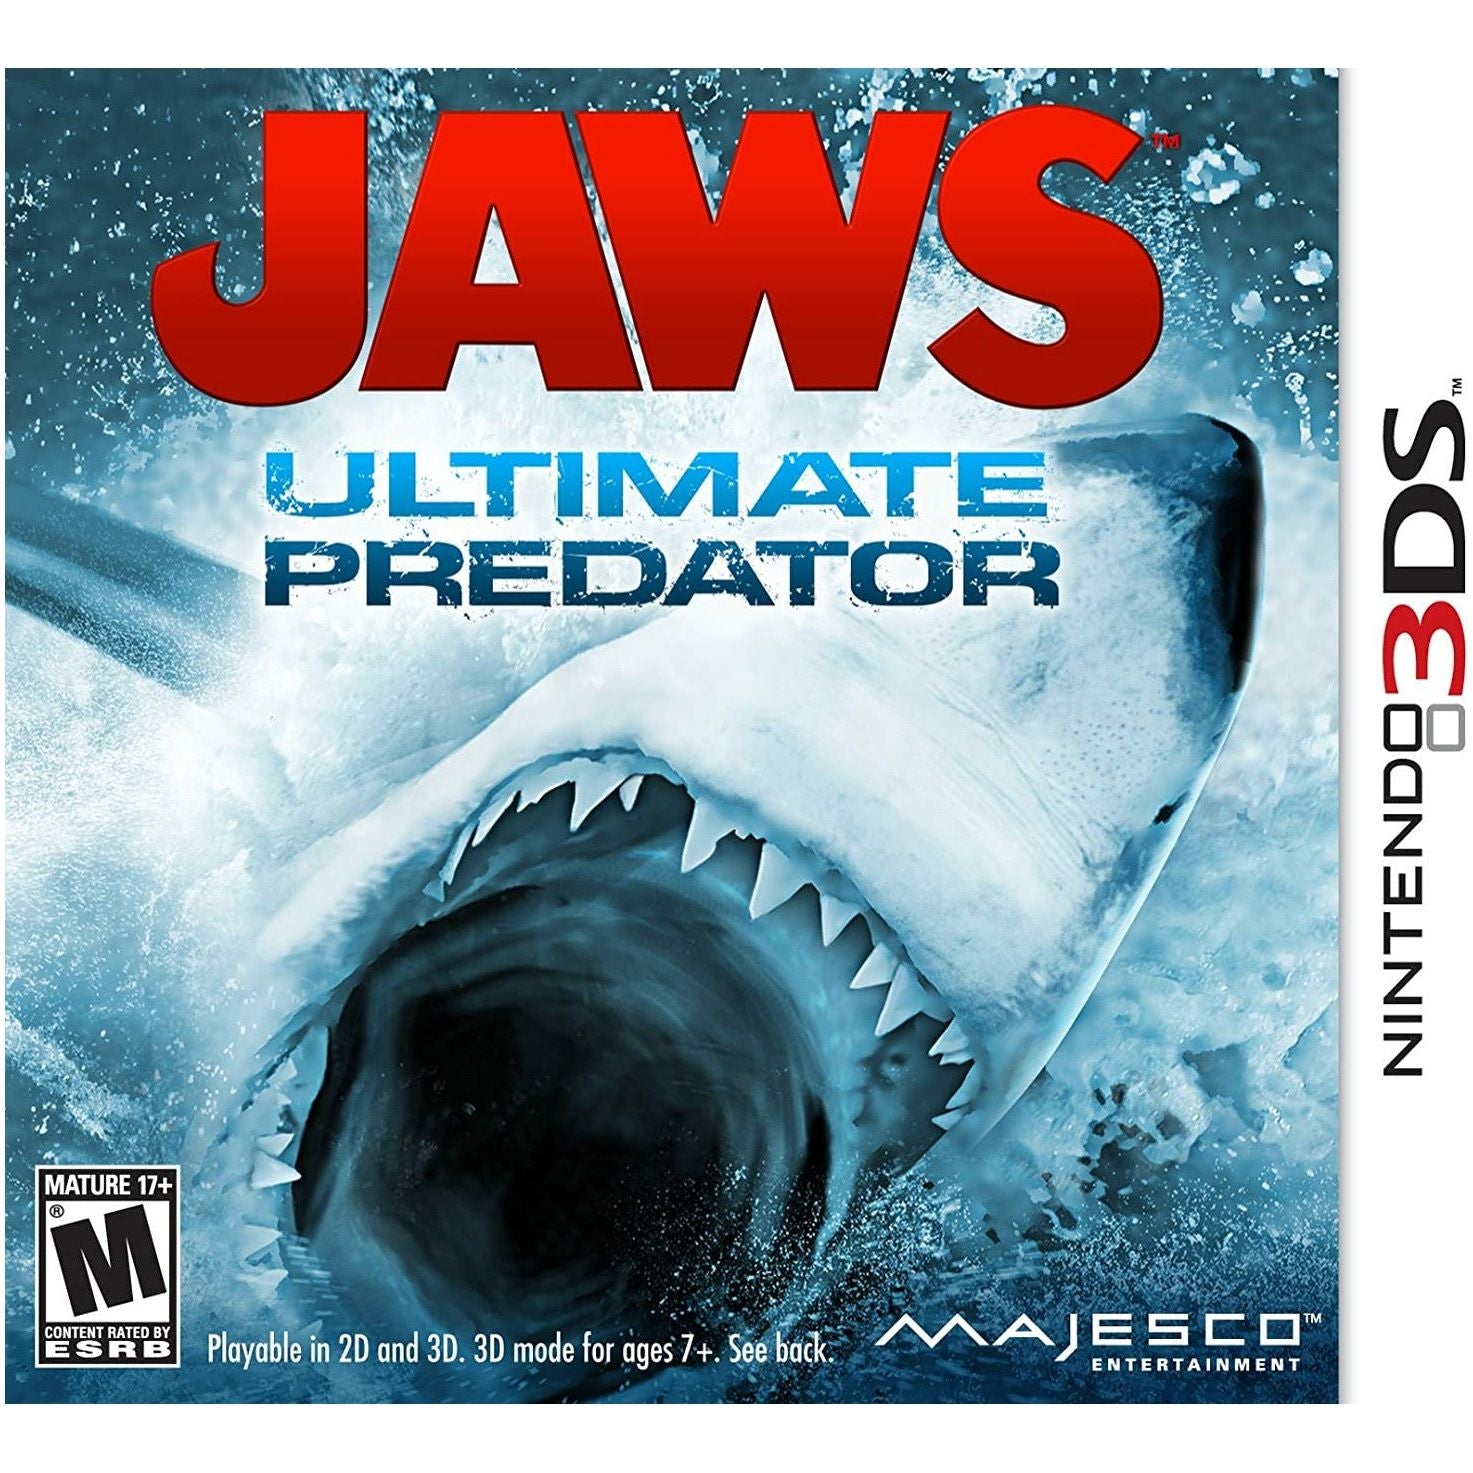 3DS - Jaws Ultimate Predator (Printed Cover Art)